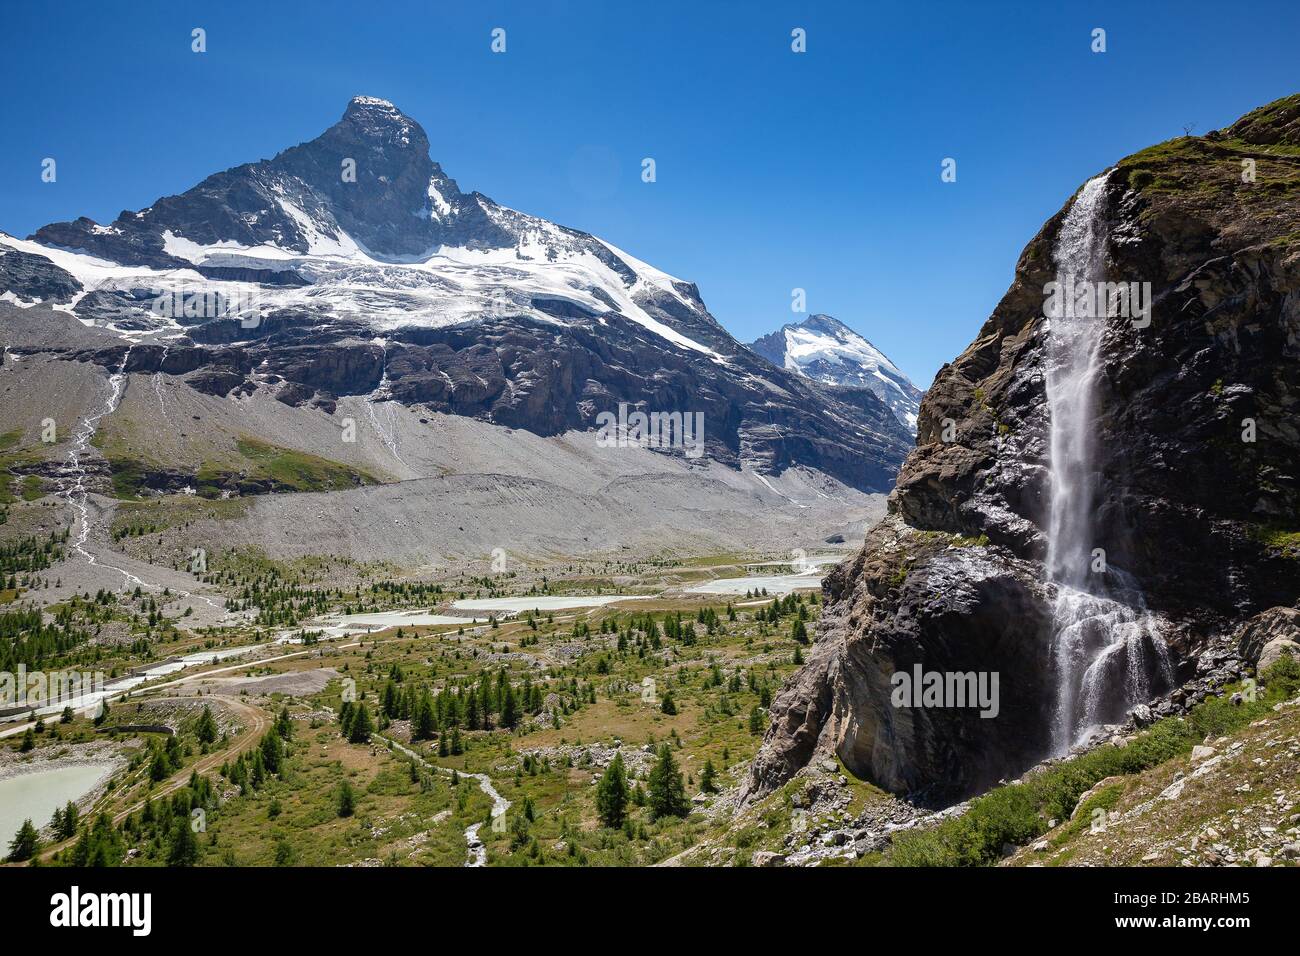 Le côté nord de la montagne Cervin. Cascade dans la vallée de Zmuttgletscher. Zermatt. Alpes suisses. La Suisse. Banque D'Images